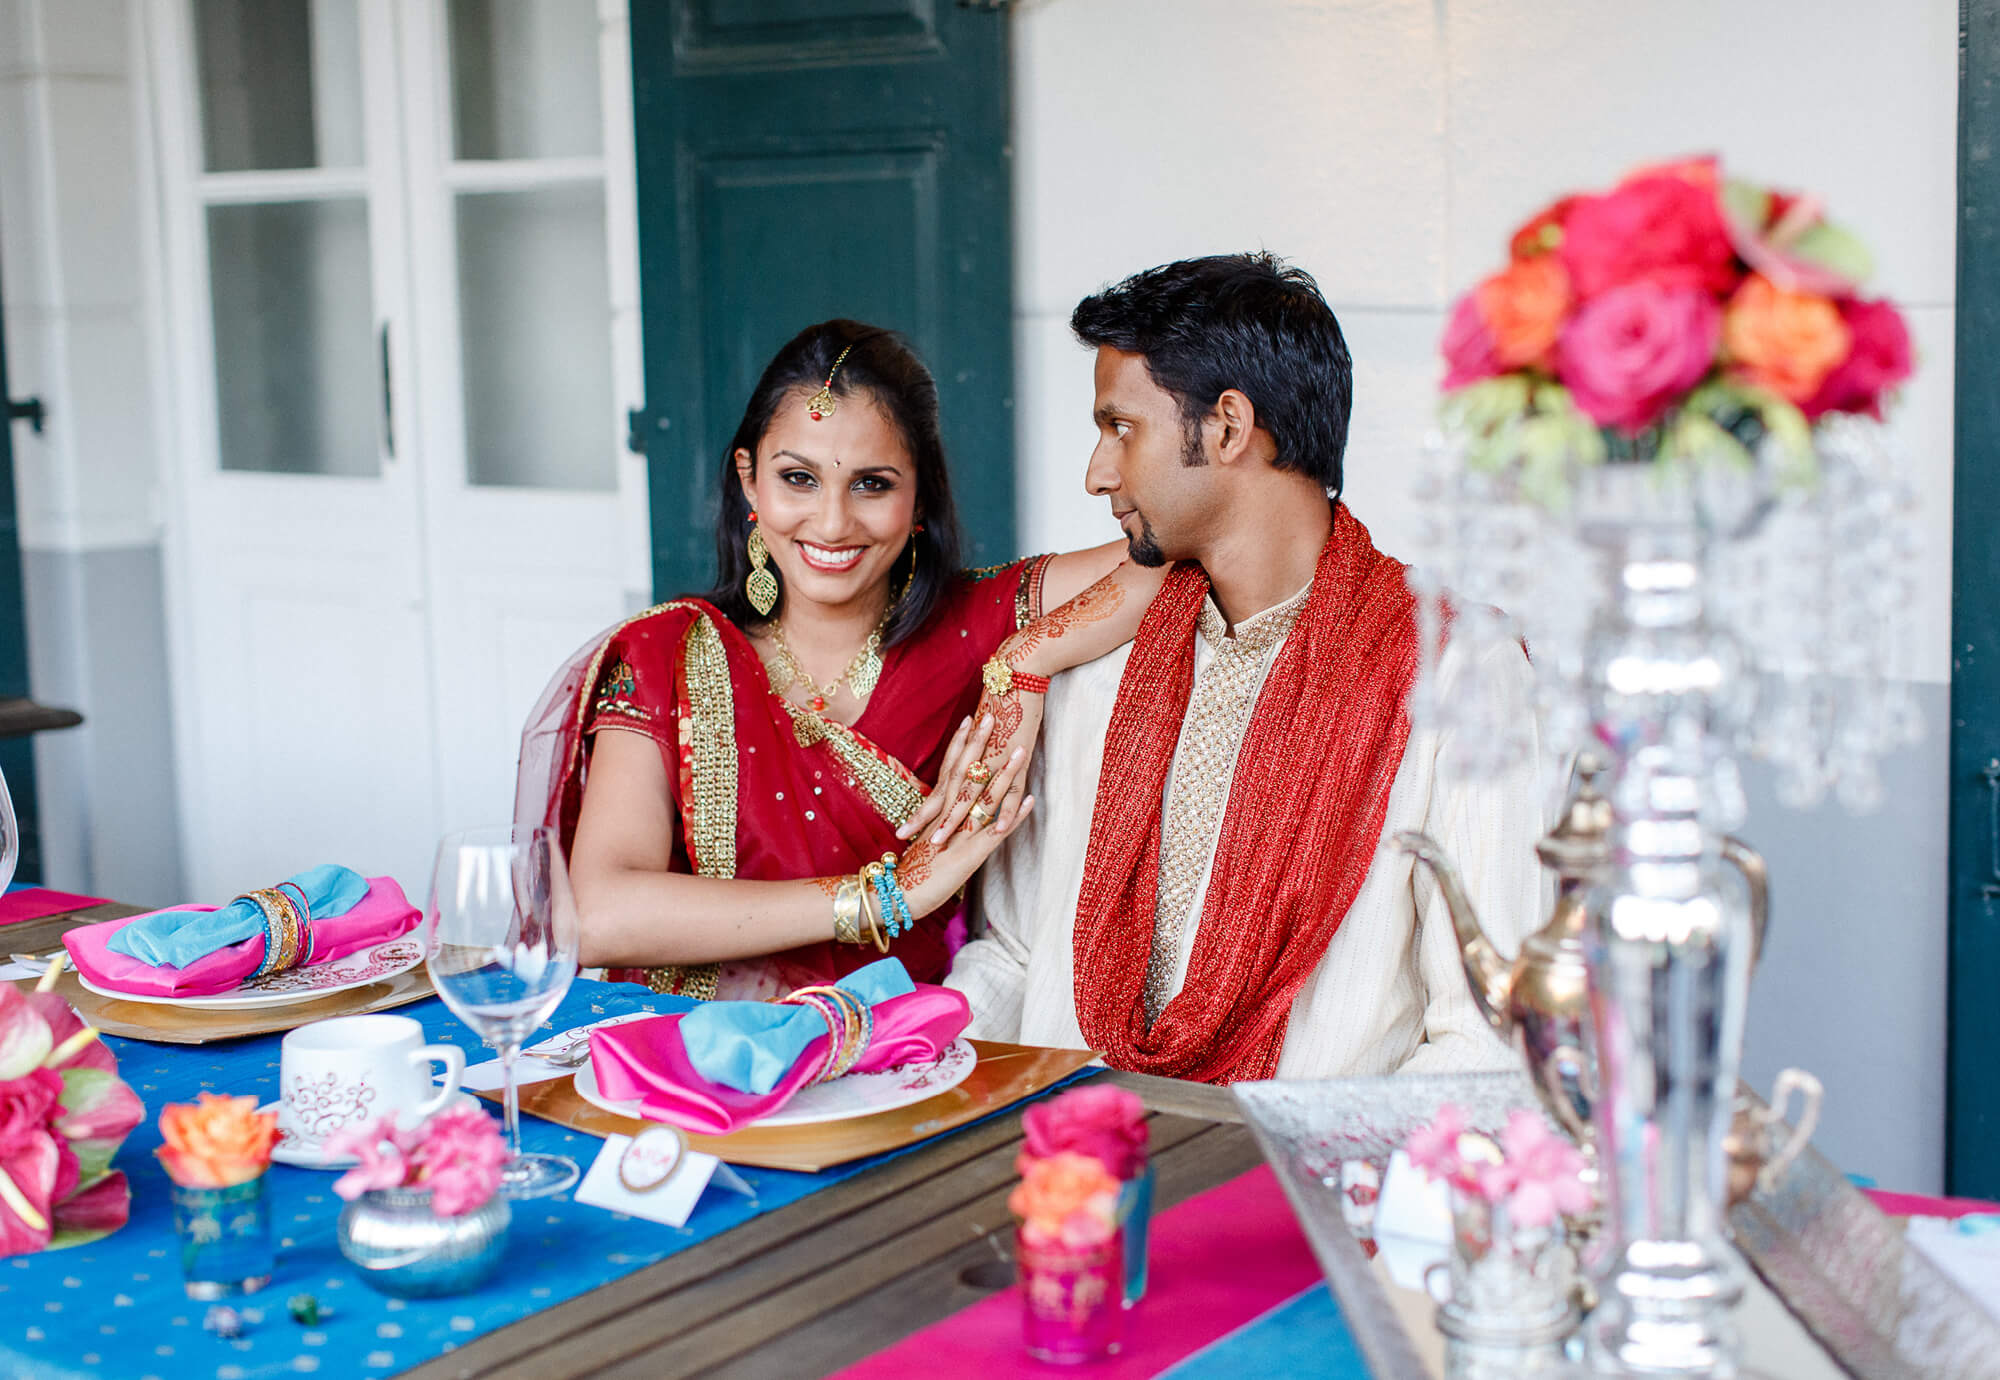 Tischdekoration bunte Hochzeit mit indischem Touch